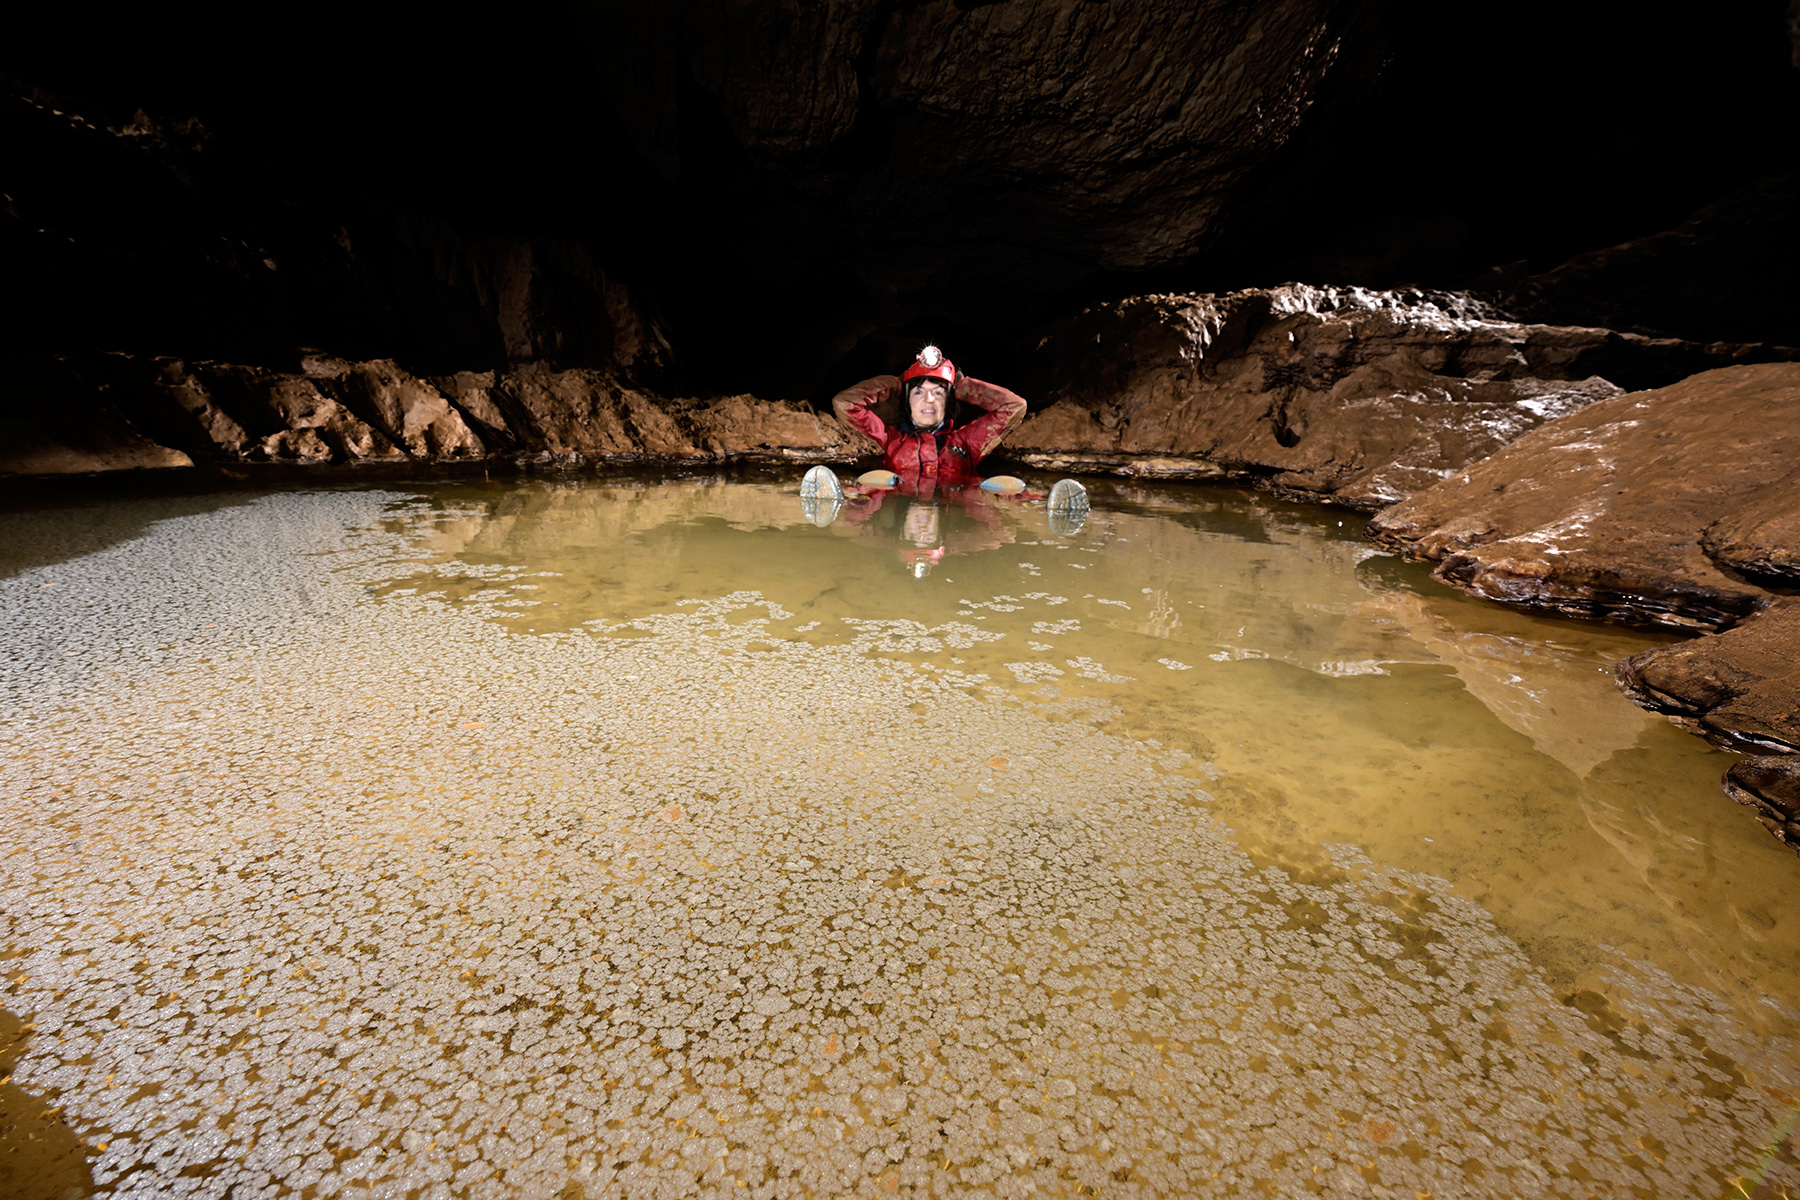 Warm river cave (Virginia, USA) - Cette vasque appelée "hot tub" est l'une des curiosités de cette cavité thermale. L'eau est à 33°C car elle est alimentée par une arrivée d'eau chaude se mélangeant à l'eau de la rivière. Cette température élevée favorise la formation de calcite flottante.